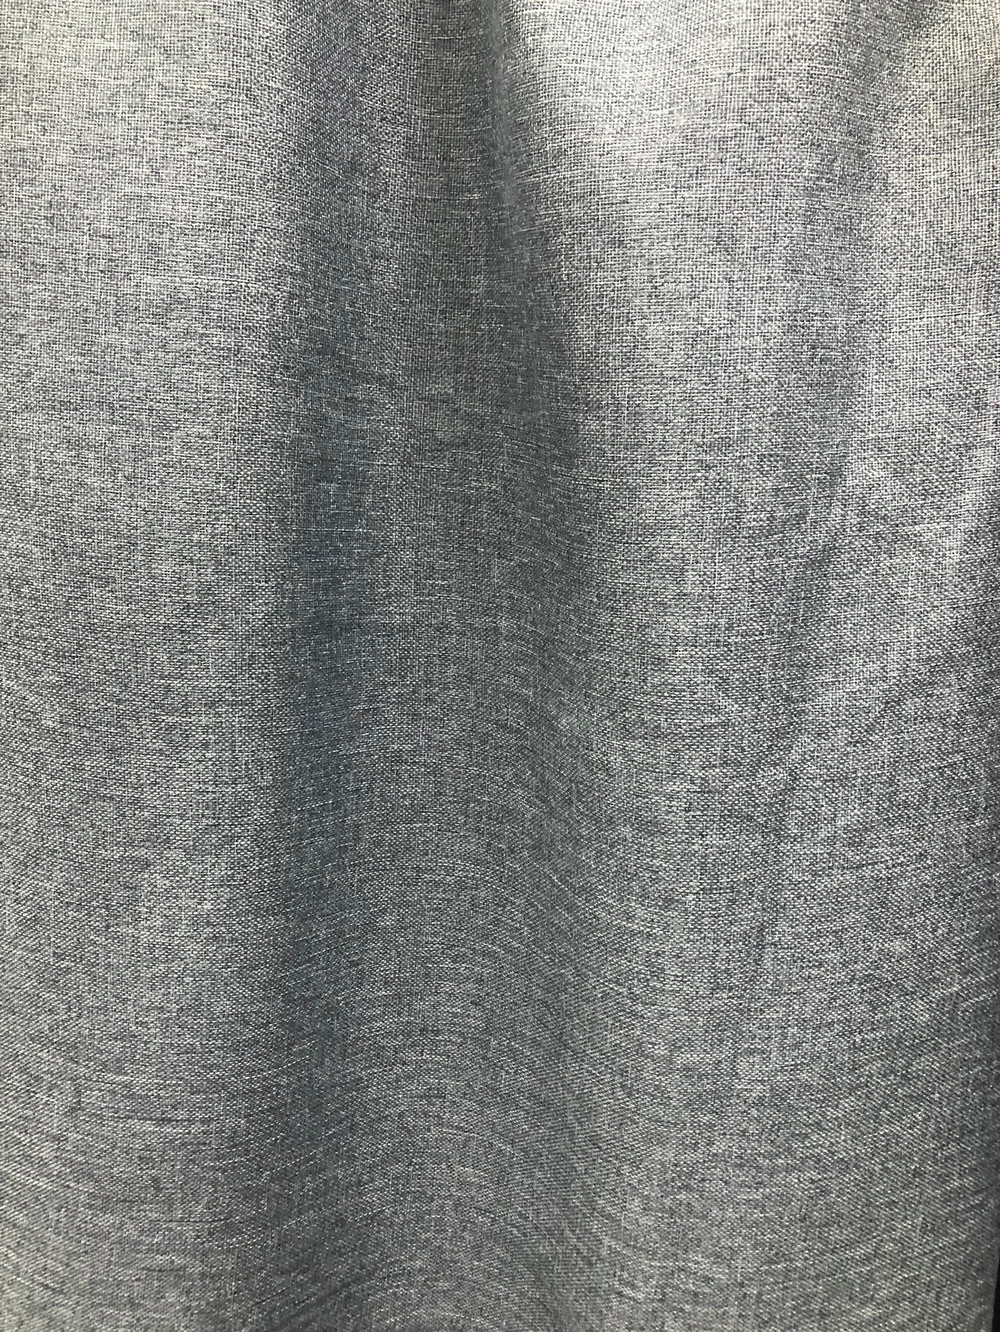 Ткань портьерная Блэкаут-лен, цвет серый, артикул 327708